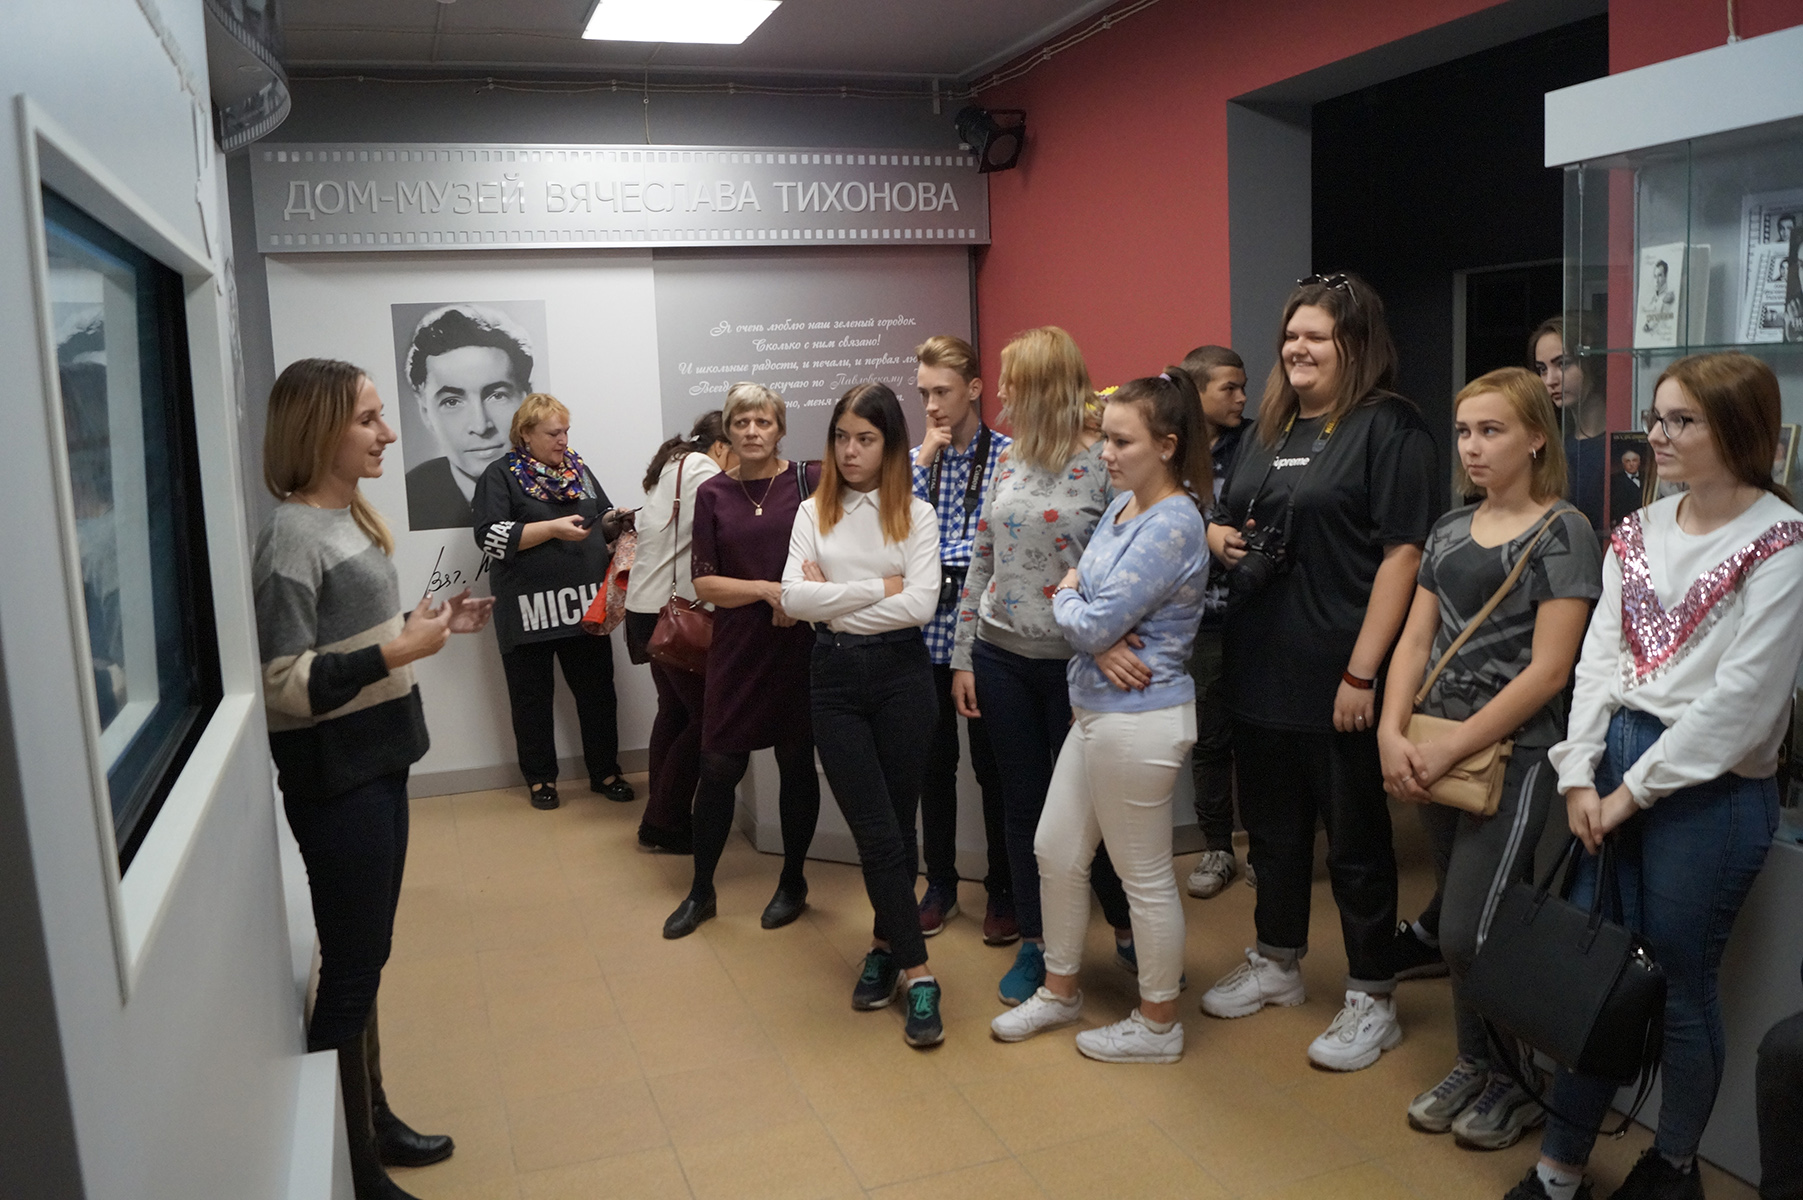 В доме-музее Тихонова организовали экскурсию для подростков